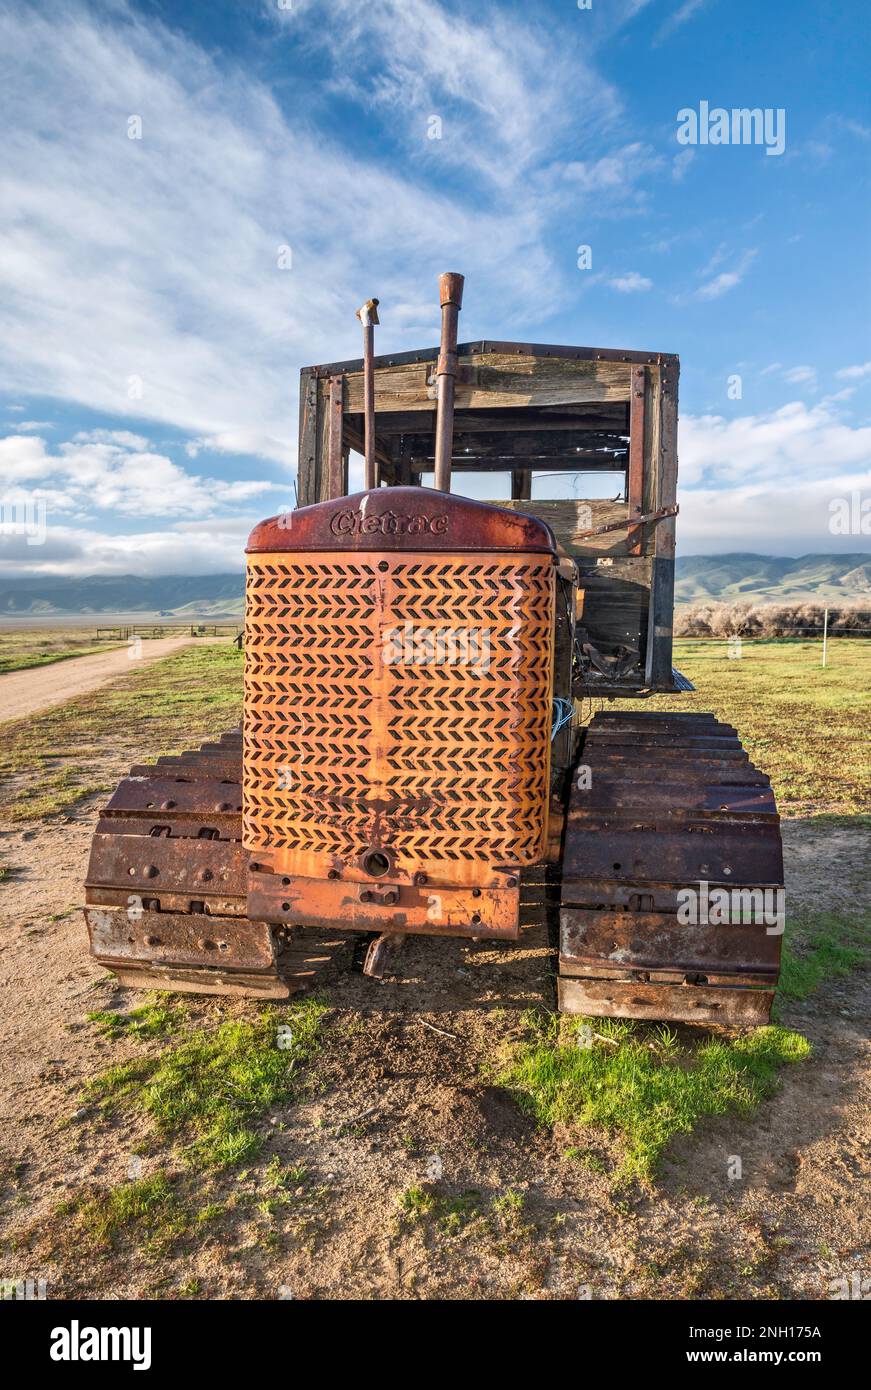 Vecchio trattore cingolato Cletrac conservato vicino al Goodwin Education Center, presso l'ex ranch, Carrizo Plain National Monument, California, USA Foto Stock